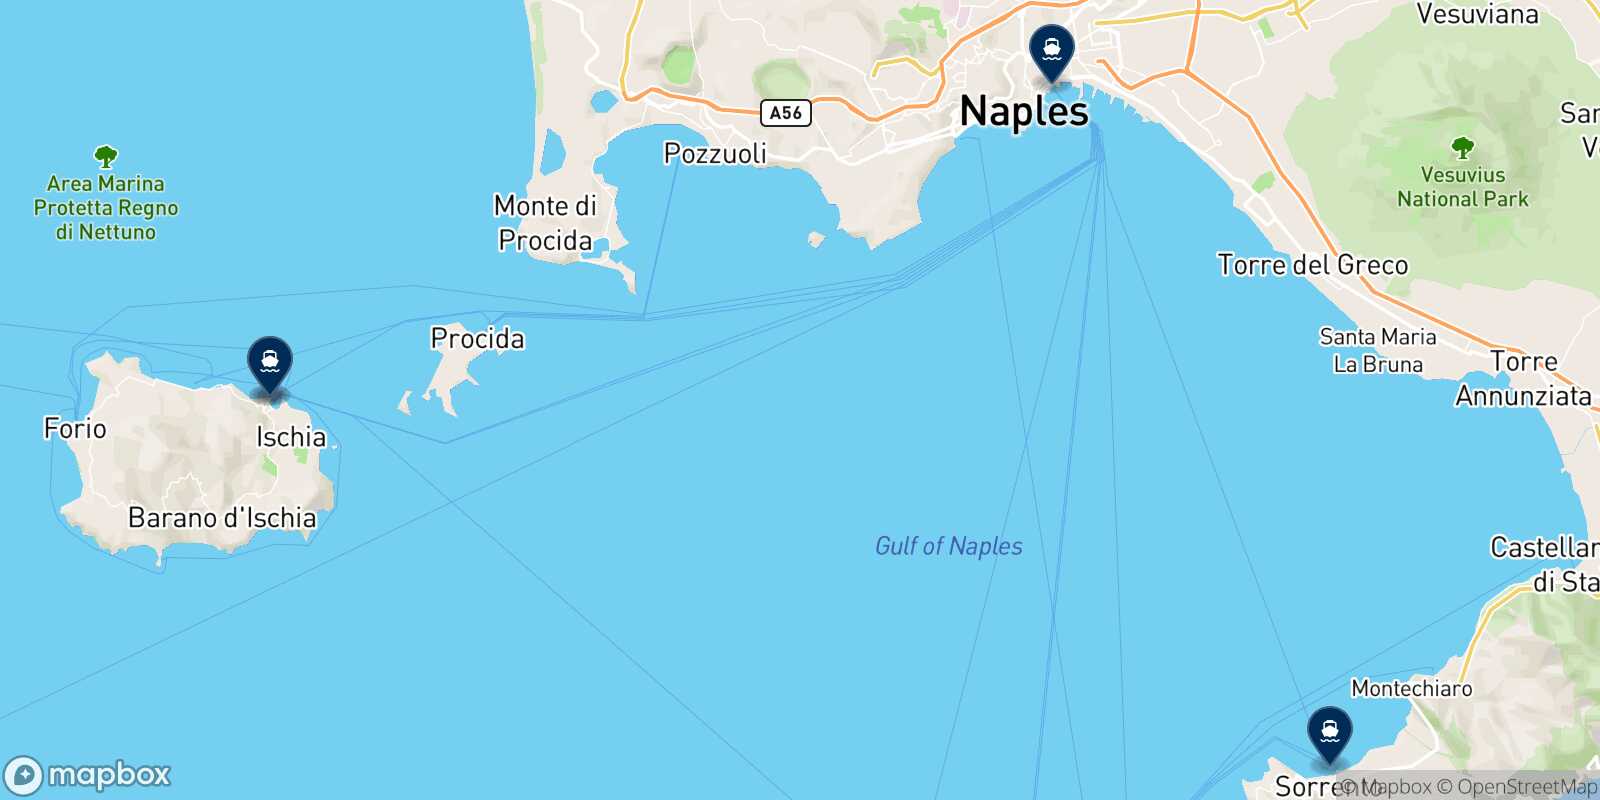 Mappa delle destinazioni raggiungibili da Ischia